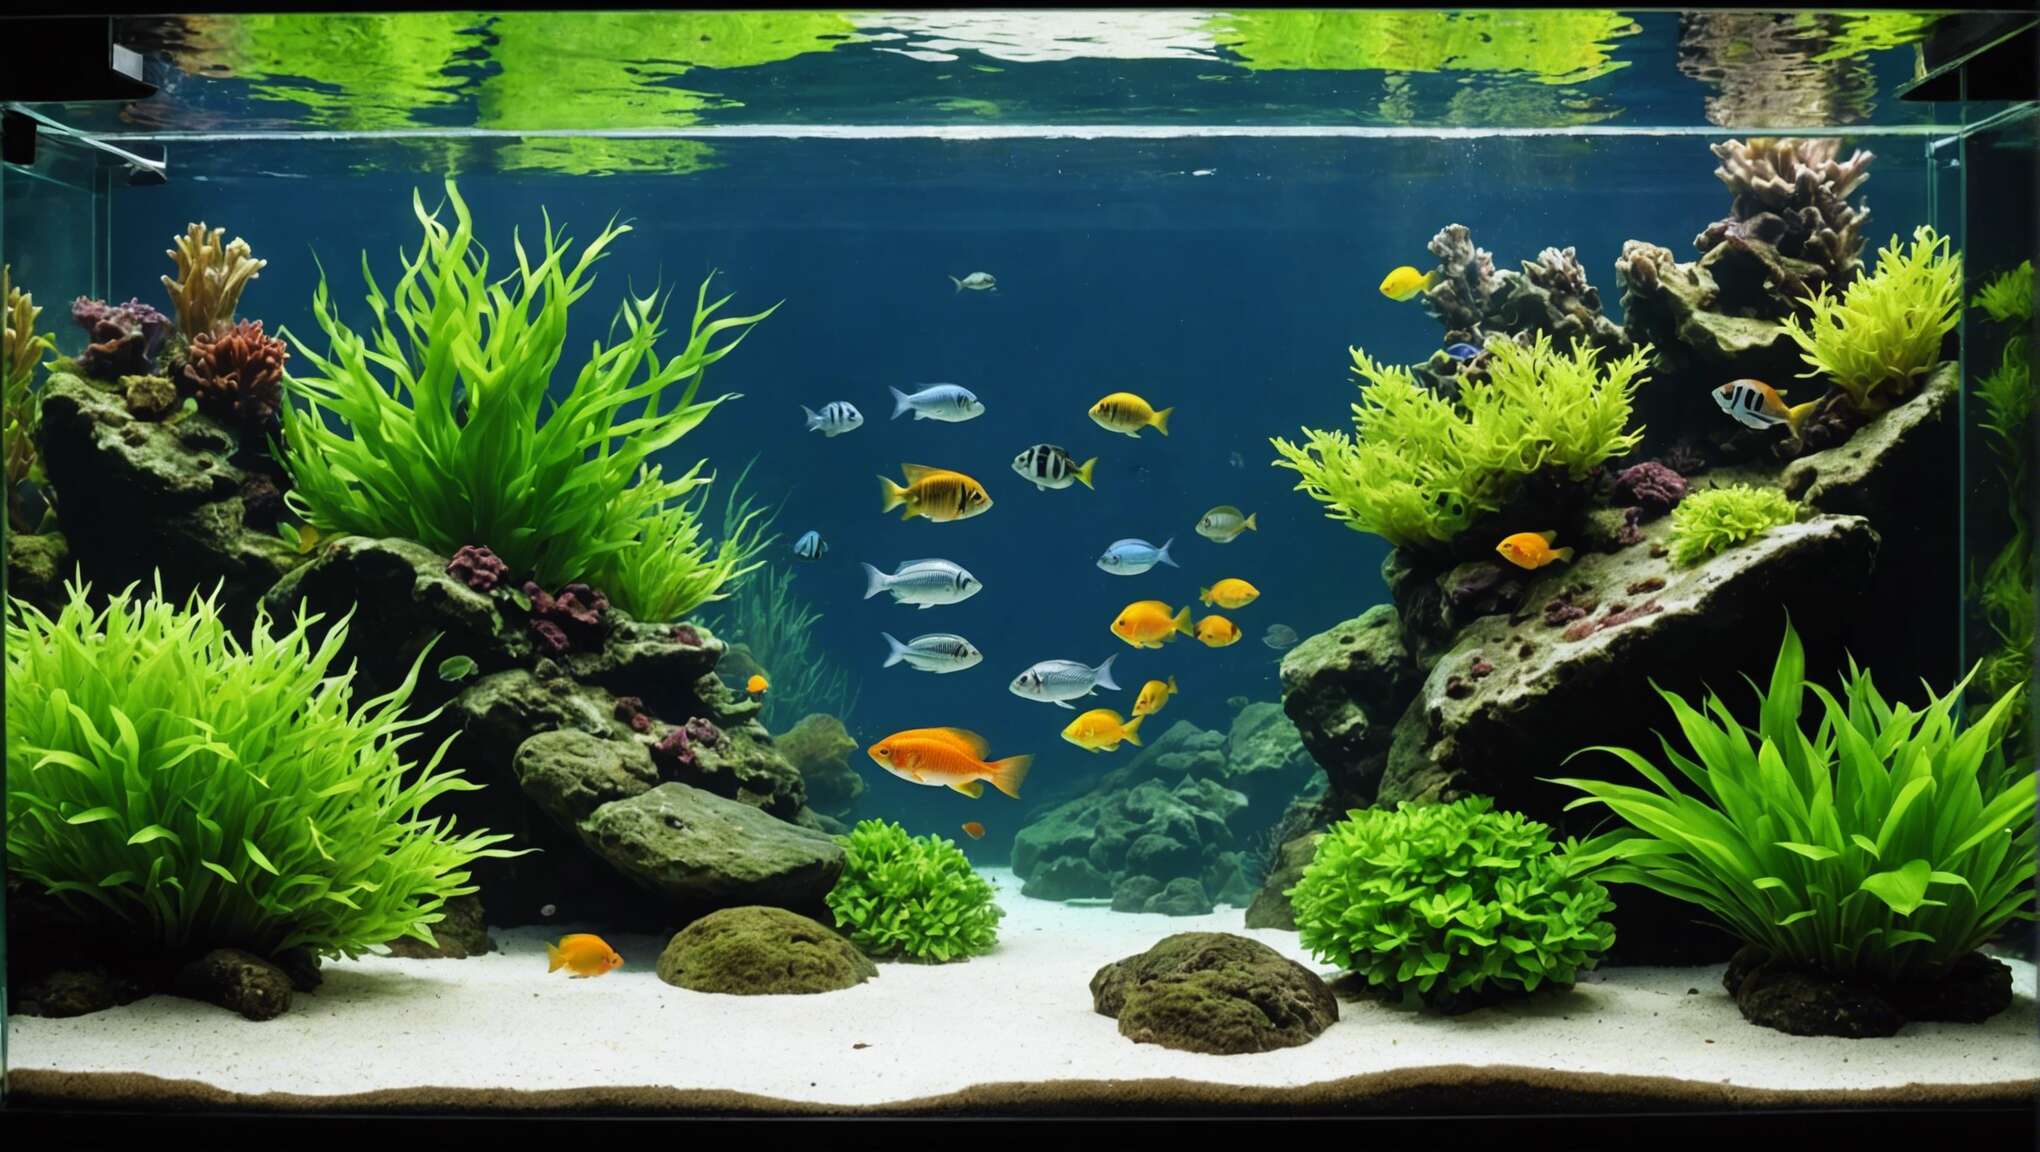 Méthodes de nettoyage et maintenance pour un aquarium sans algues